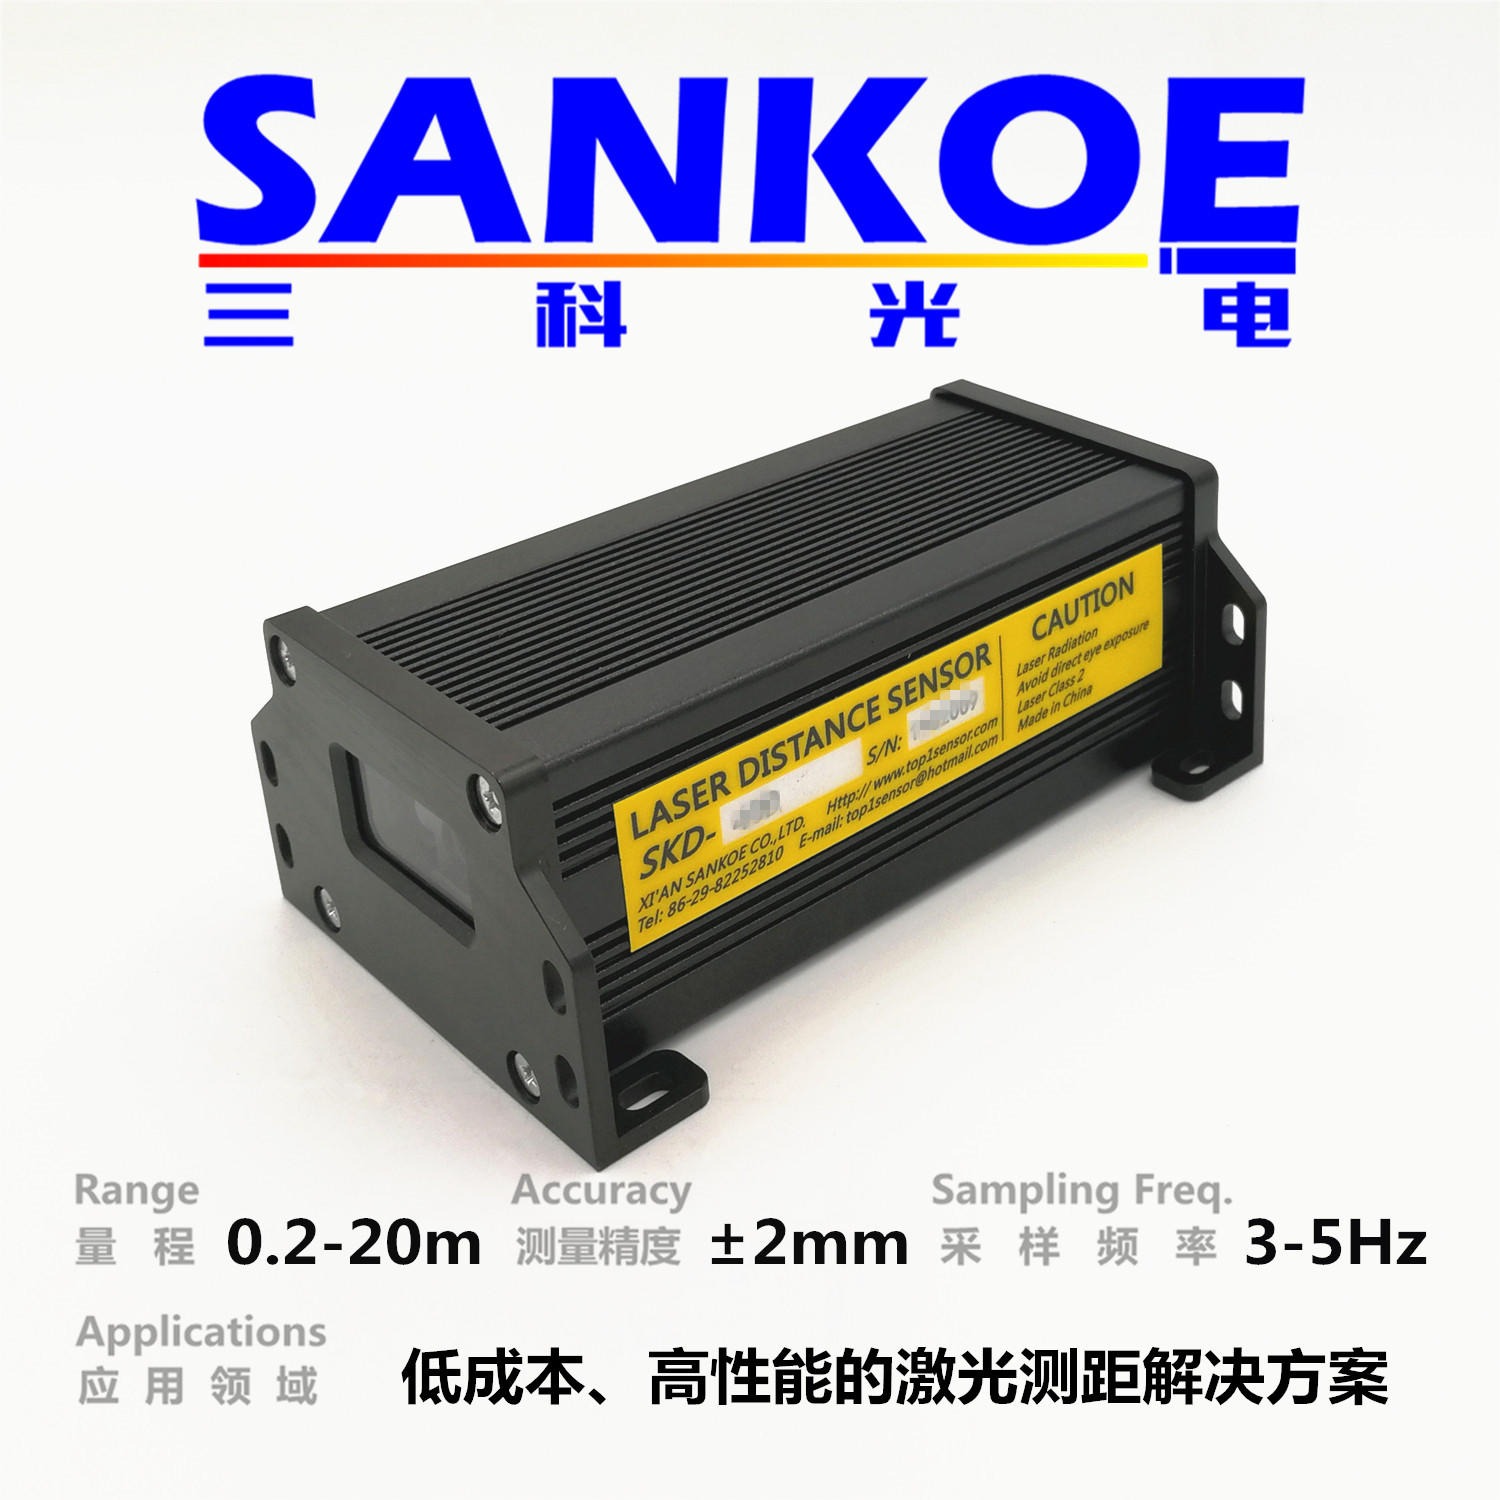 低成本激光测距传感器SKD-20D，三科光电SANKOE激光定位测距模块，modbus数字输出